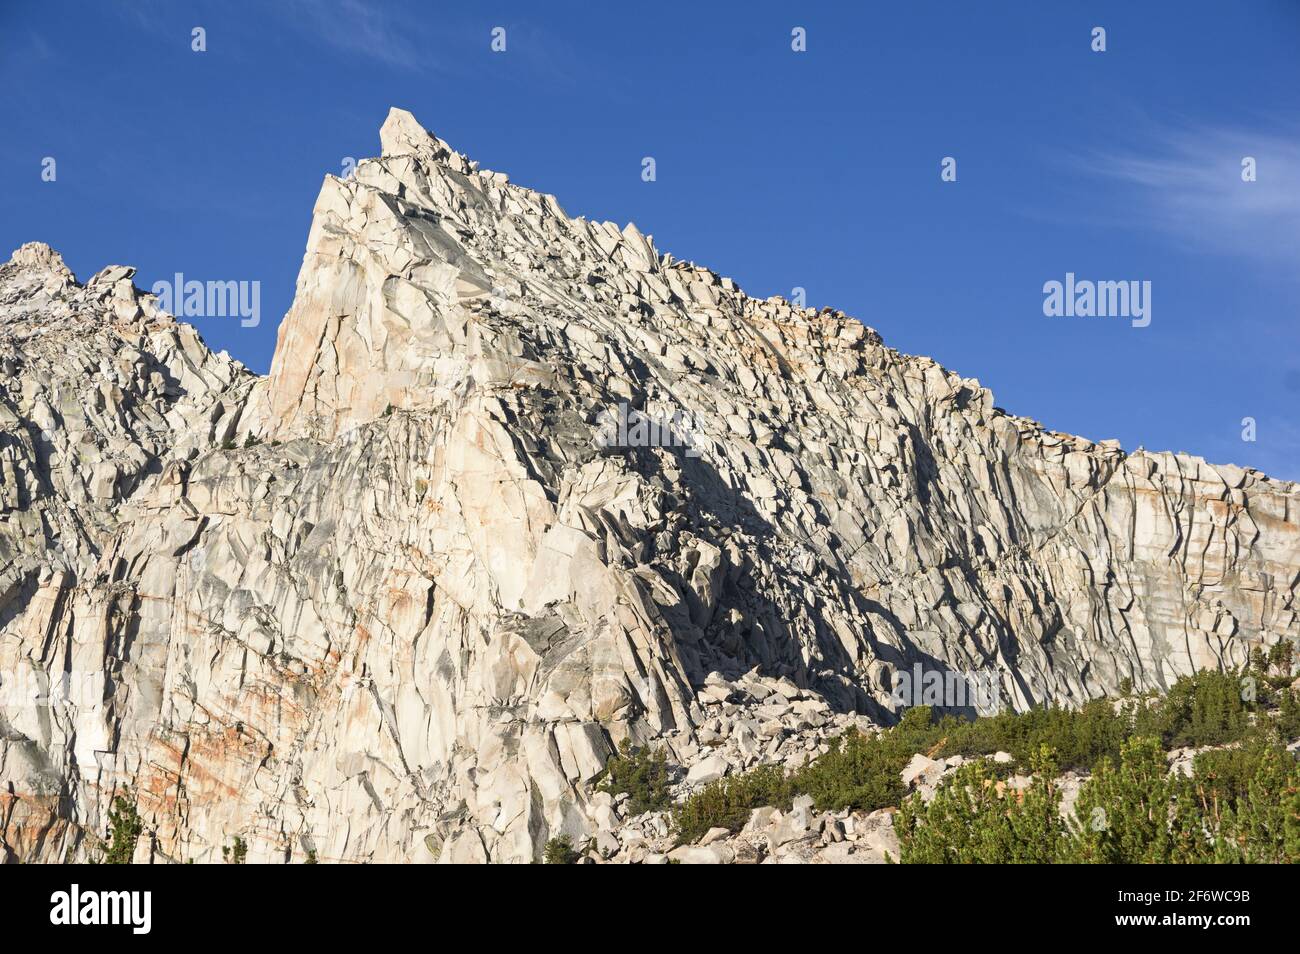 Namenloser Pyramid Mountain in der Nähe des Kearsarge Passes in der Sierra Nevada Berge von Kalifornien Stockfoto